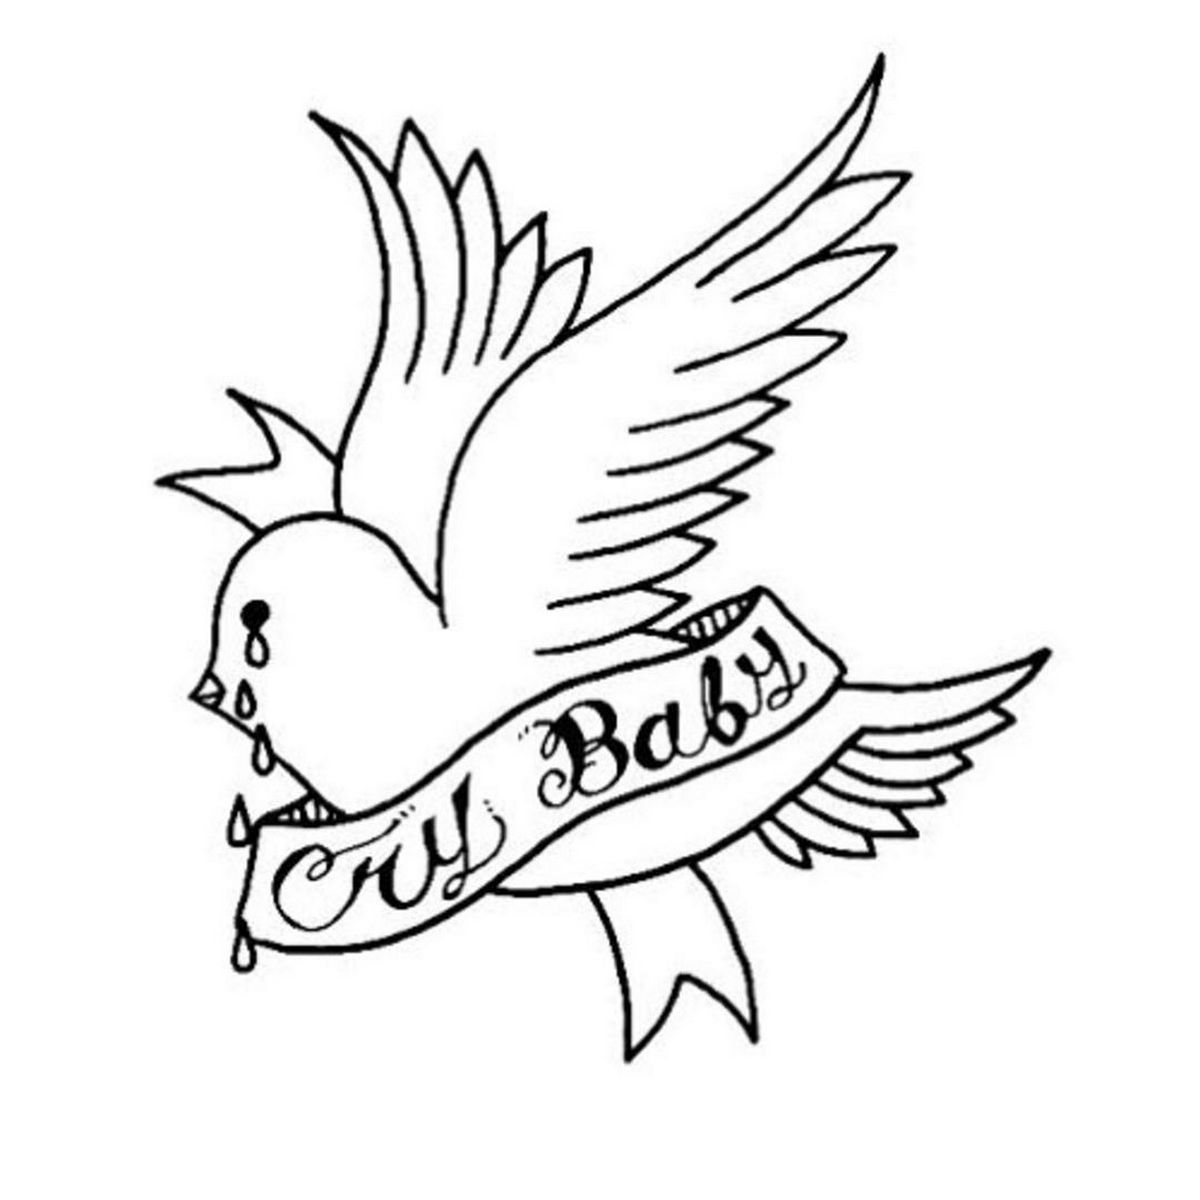 Cool dizajn slike - Lil Peep Crybaby tetovaža